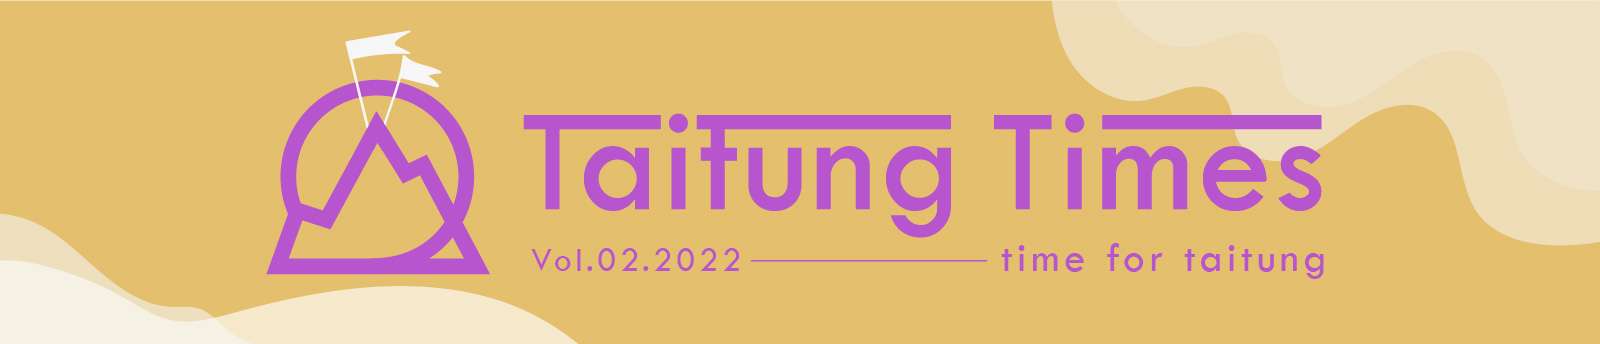 Taitung Times Vol.02.2022